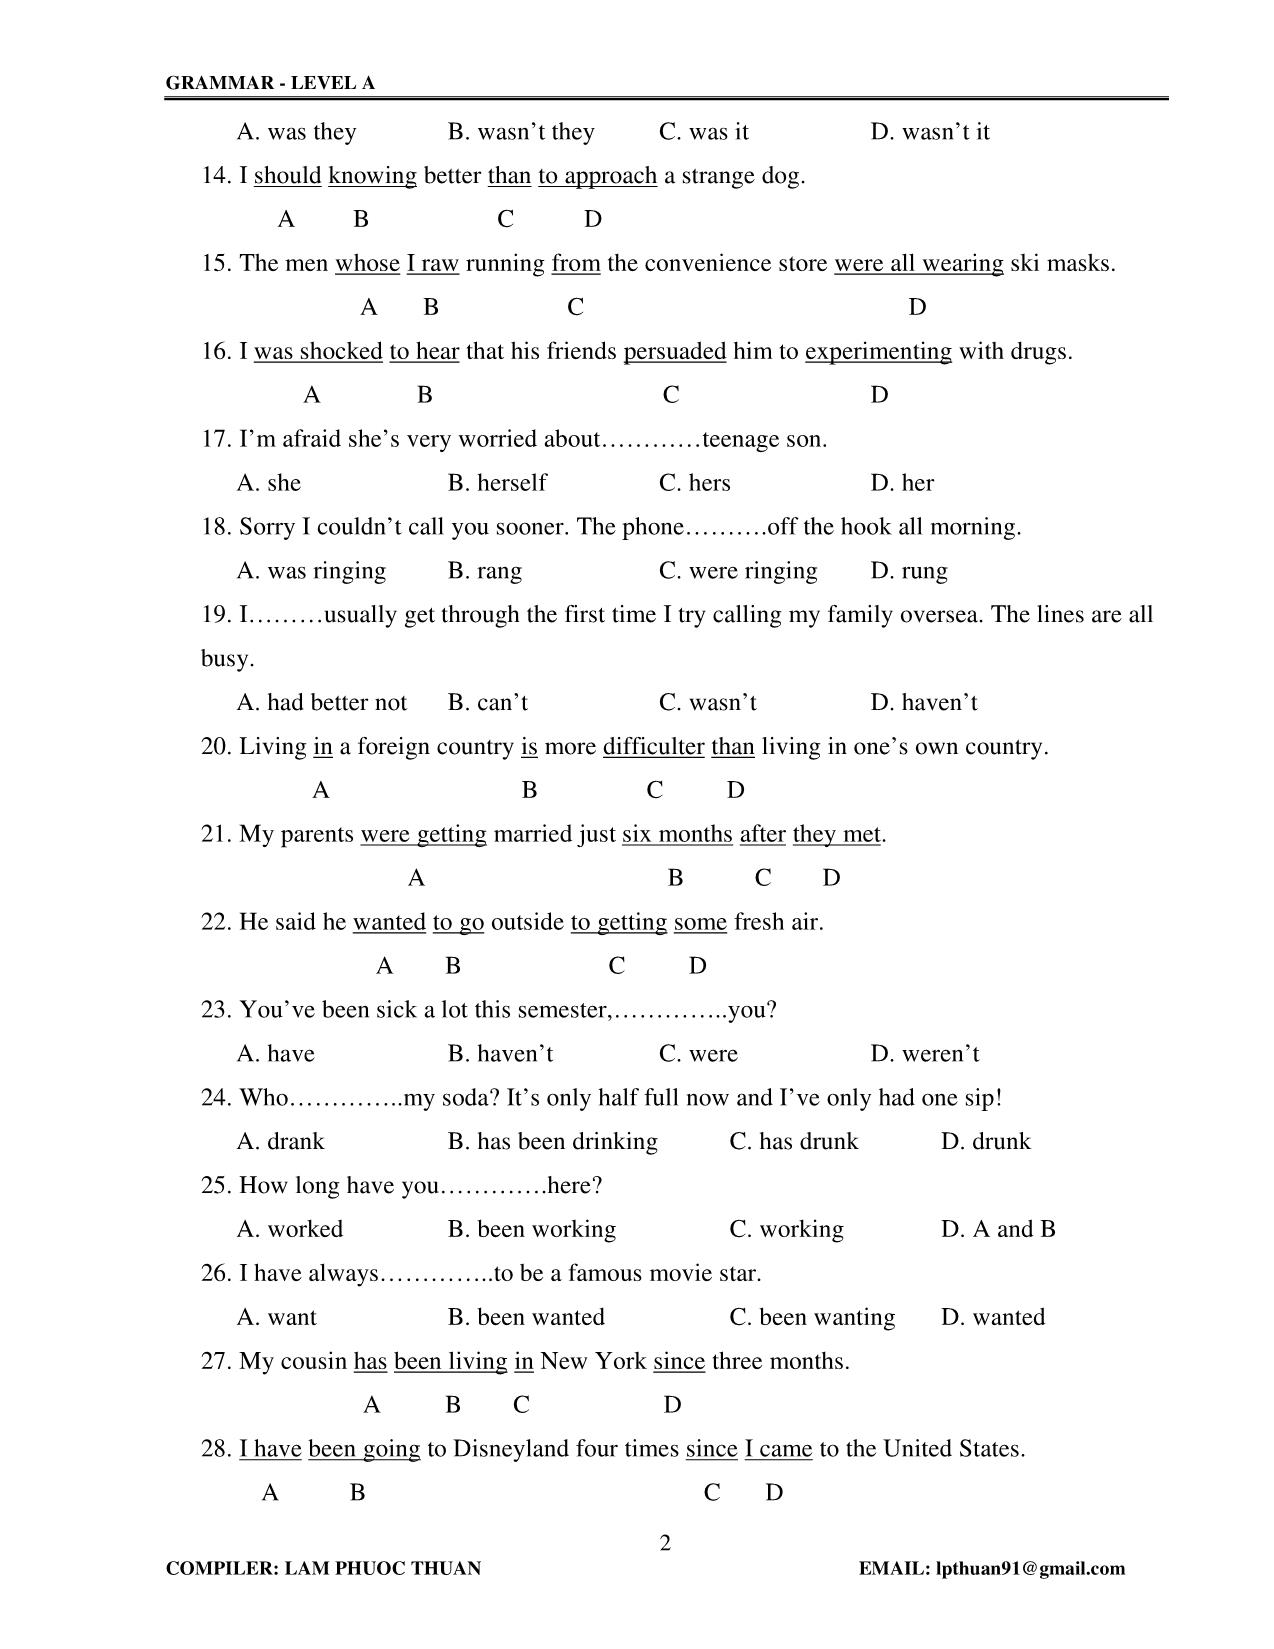 Tiếng Anh - Grammar level A trang 2